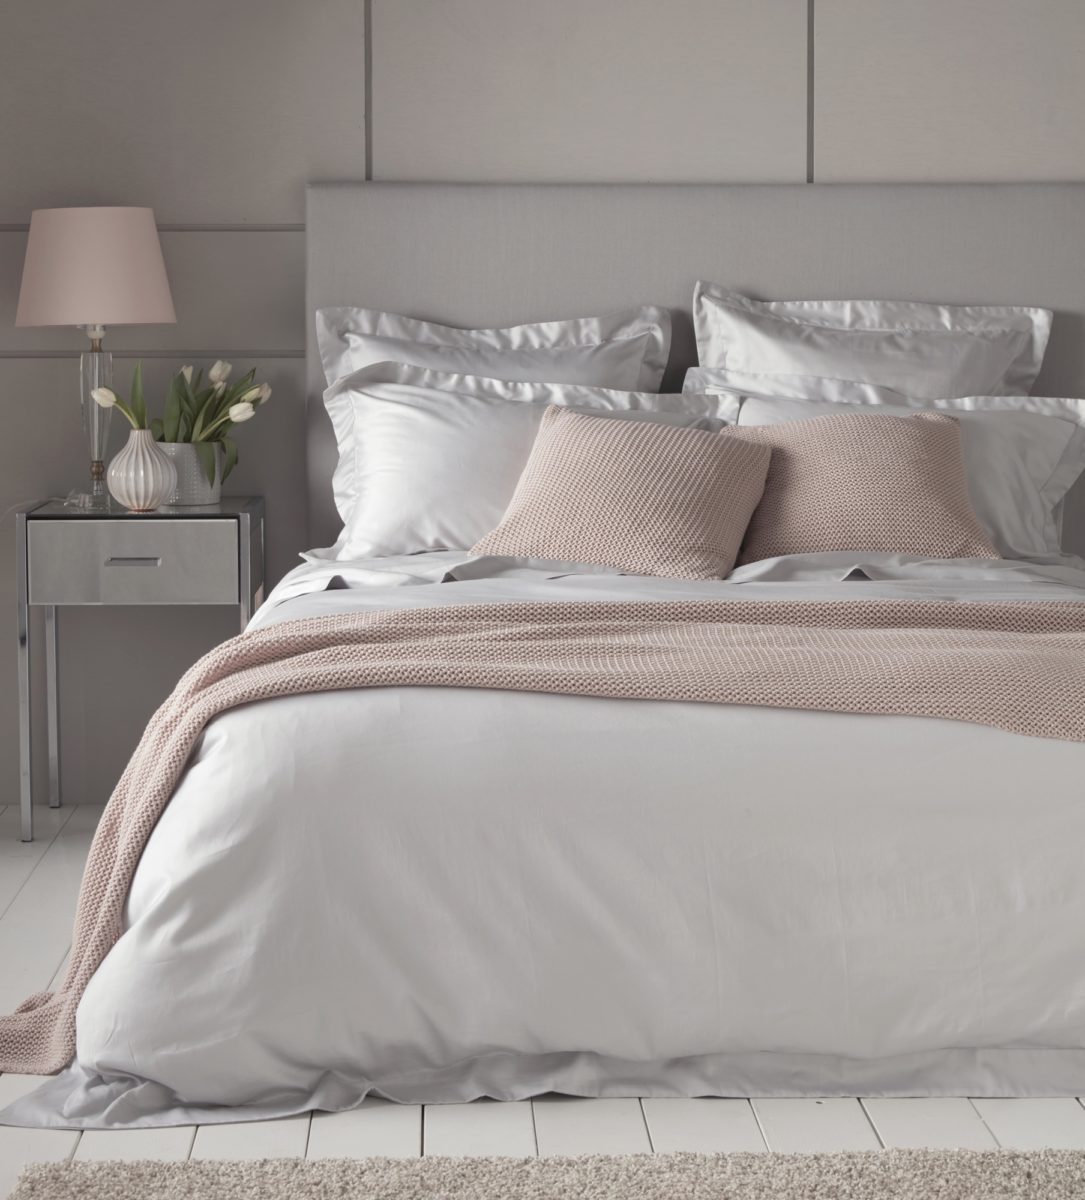 Bed linen luxury light grey 600 thread count bed linen | secret linen store XFFPZKB